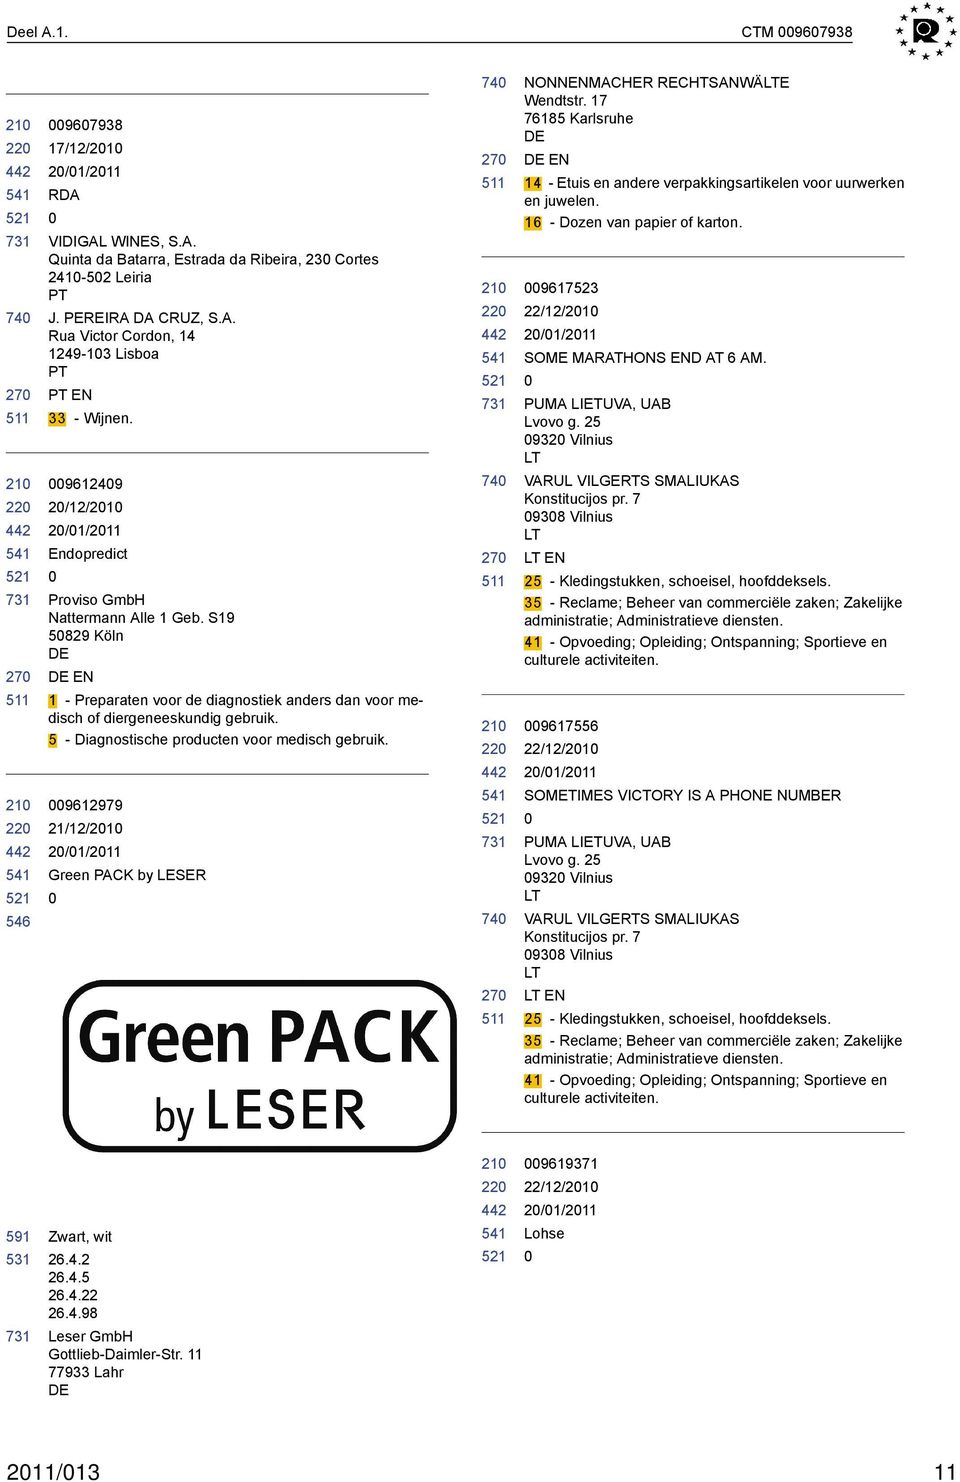 5 - Diagnostische producten voor medisch gebruik. 9612979 21/12/21 Green PACK by LER 22 22 NONNENMACHER RECHTSANWÄLTE Wendtstr.